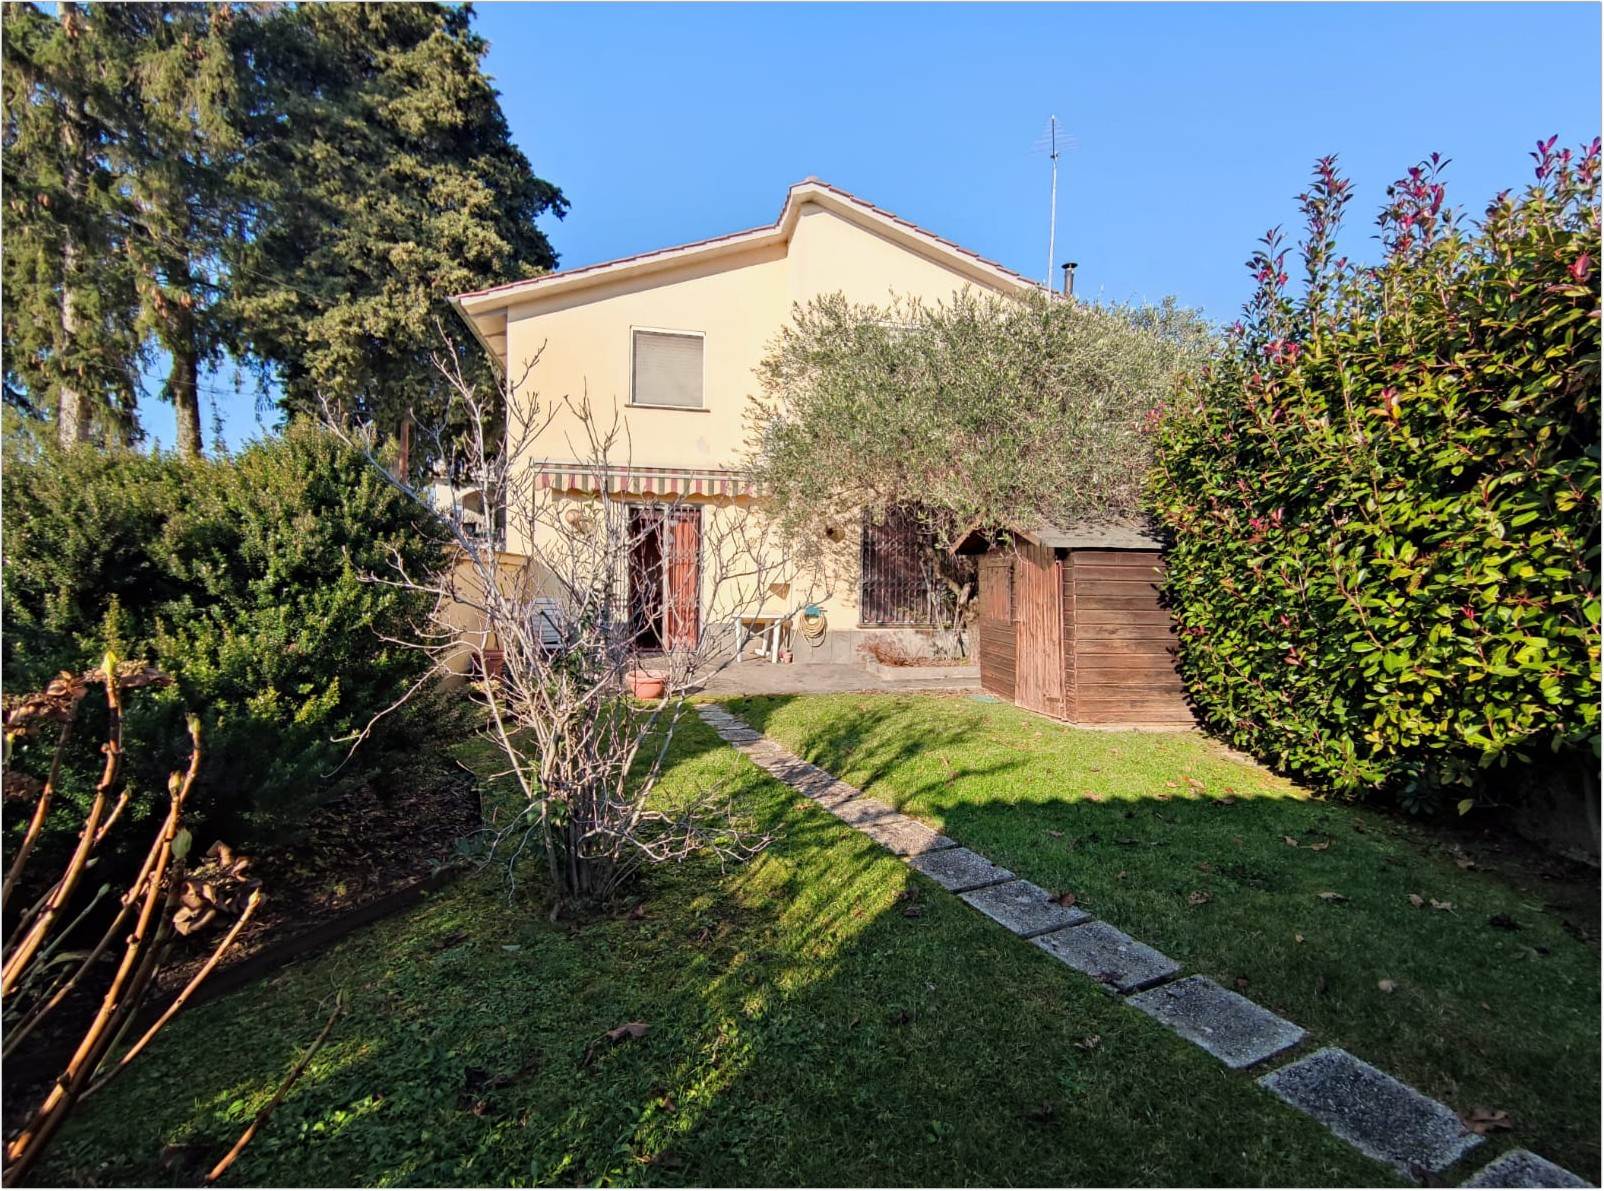 Villa in vendita a Ronciglione, 4 locali, prezzo € 169.000 | PortaleAgenzieImmobiliari.it